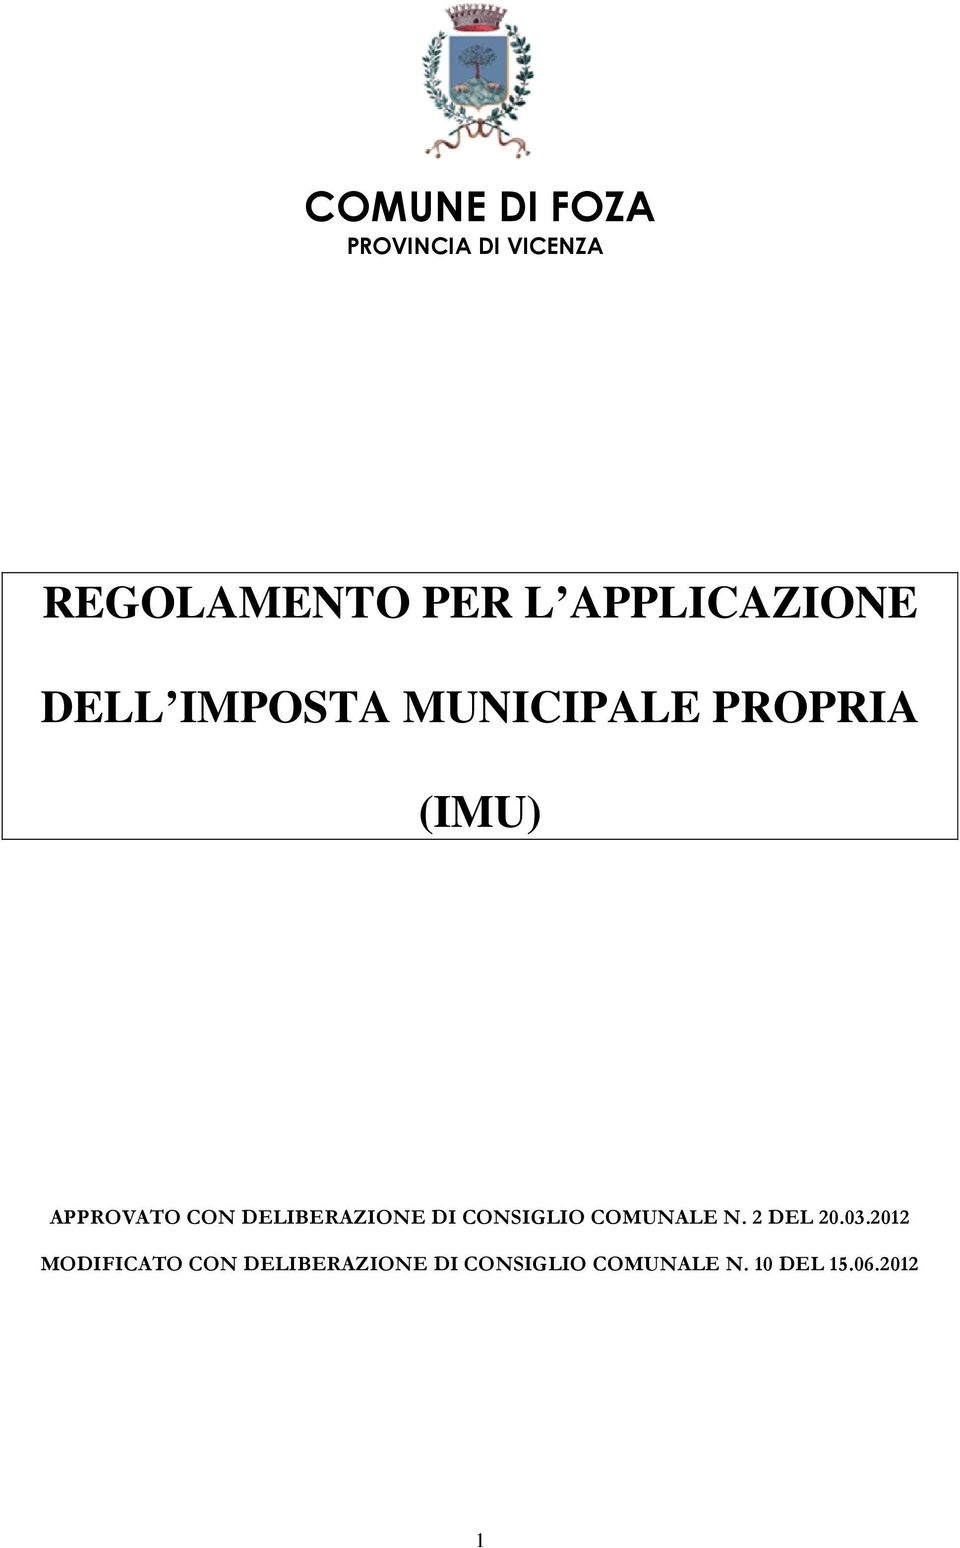 CON DELIBERAZIONE DI CONSIGLIO COMUNALE N. 2 DEL 20.03.